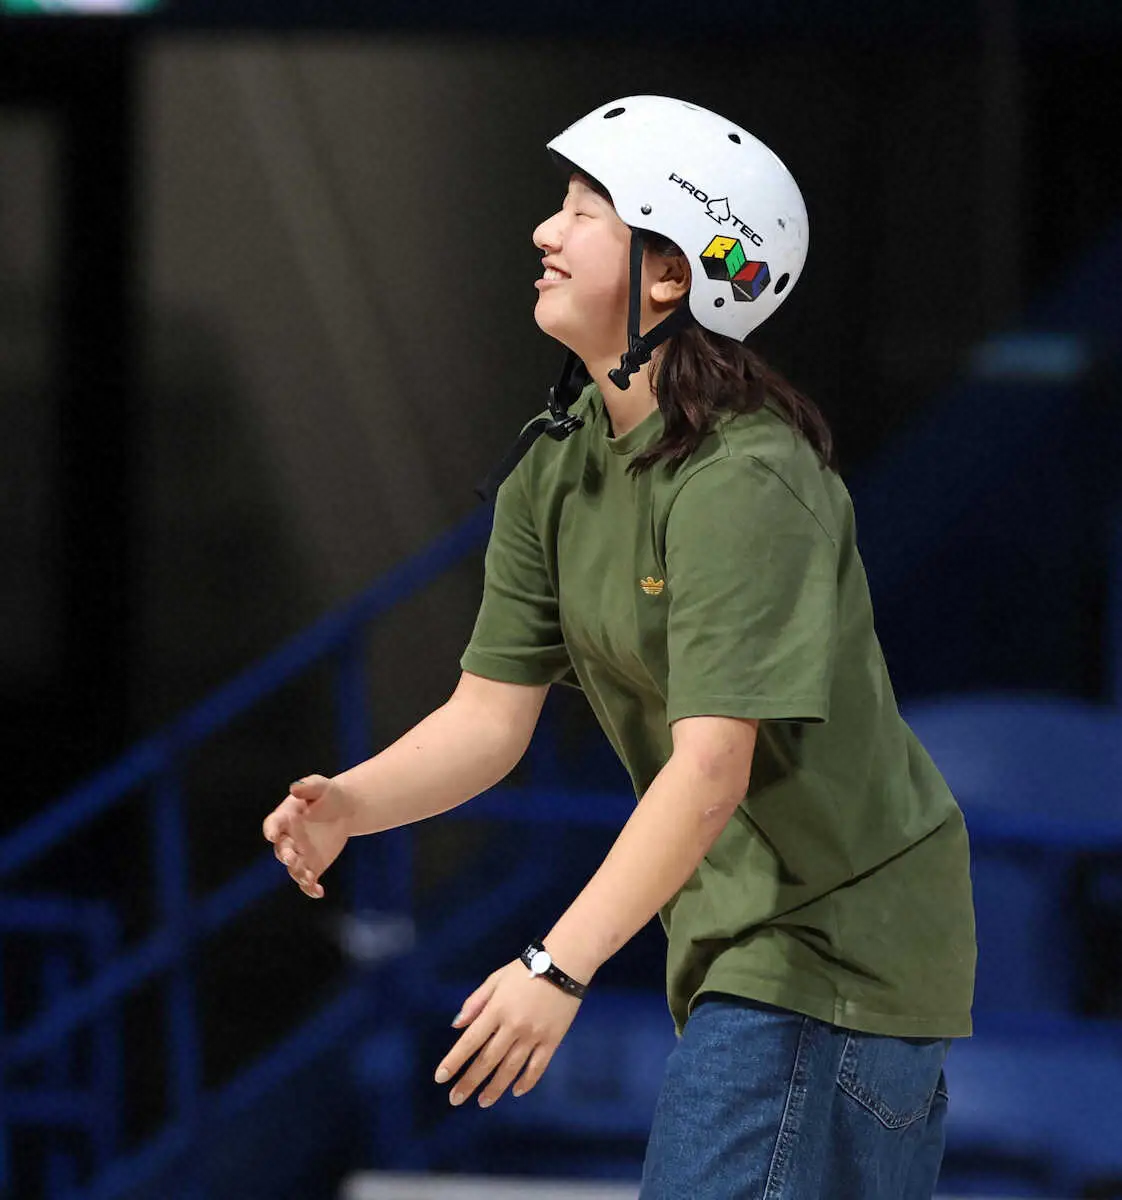 【スケボー世界選手権】東京五輪女王・西矢は6位で決勝へ「明日は頑張りたい」赤間、中山も通過